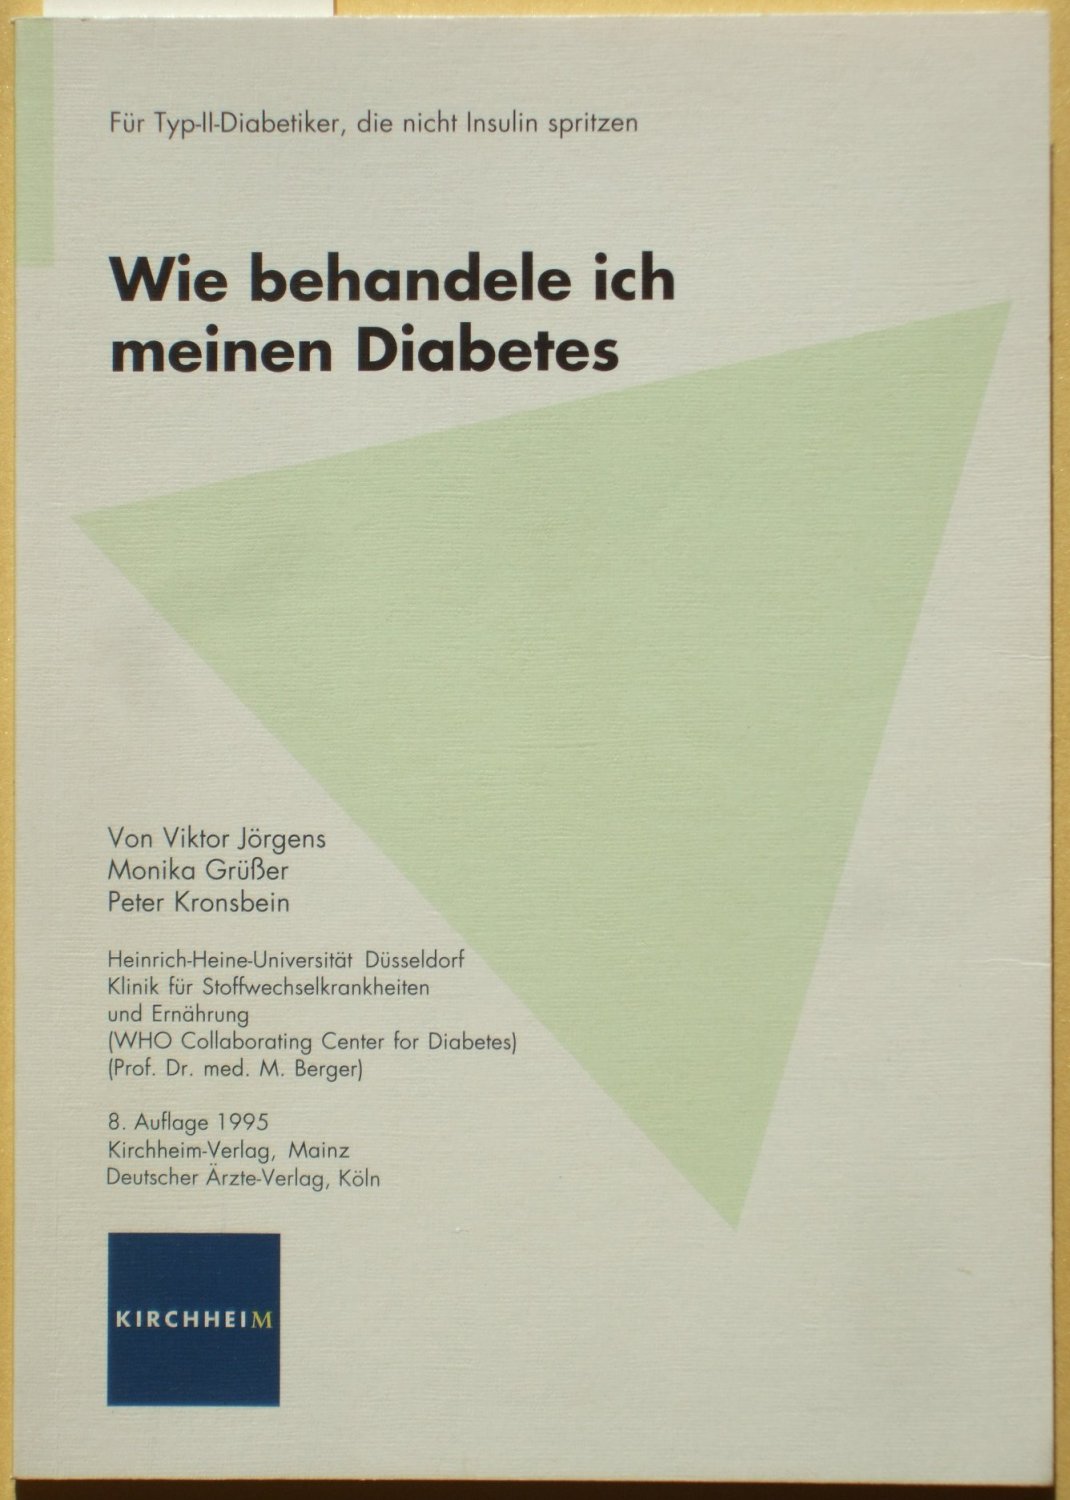 Budapest Retina Intézet - Kollégáink munkássága diabetesz témakörben